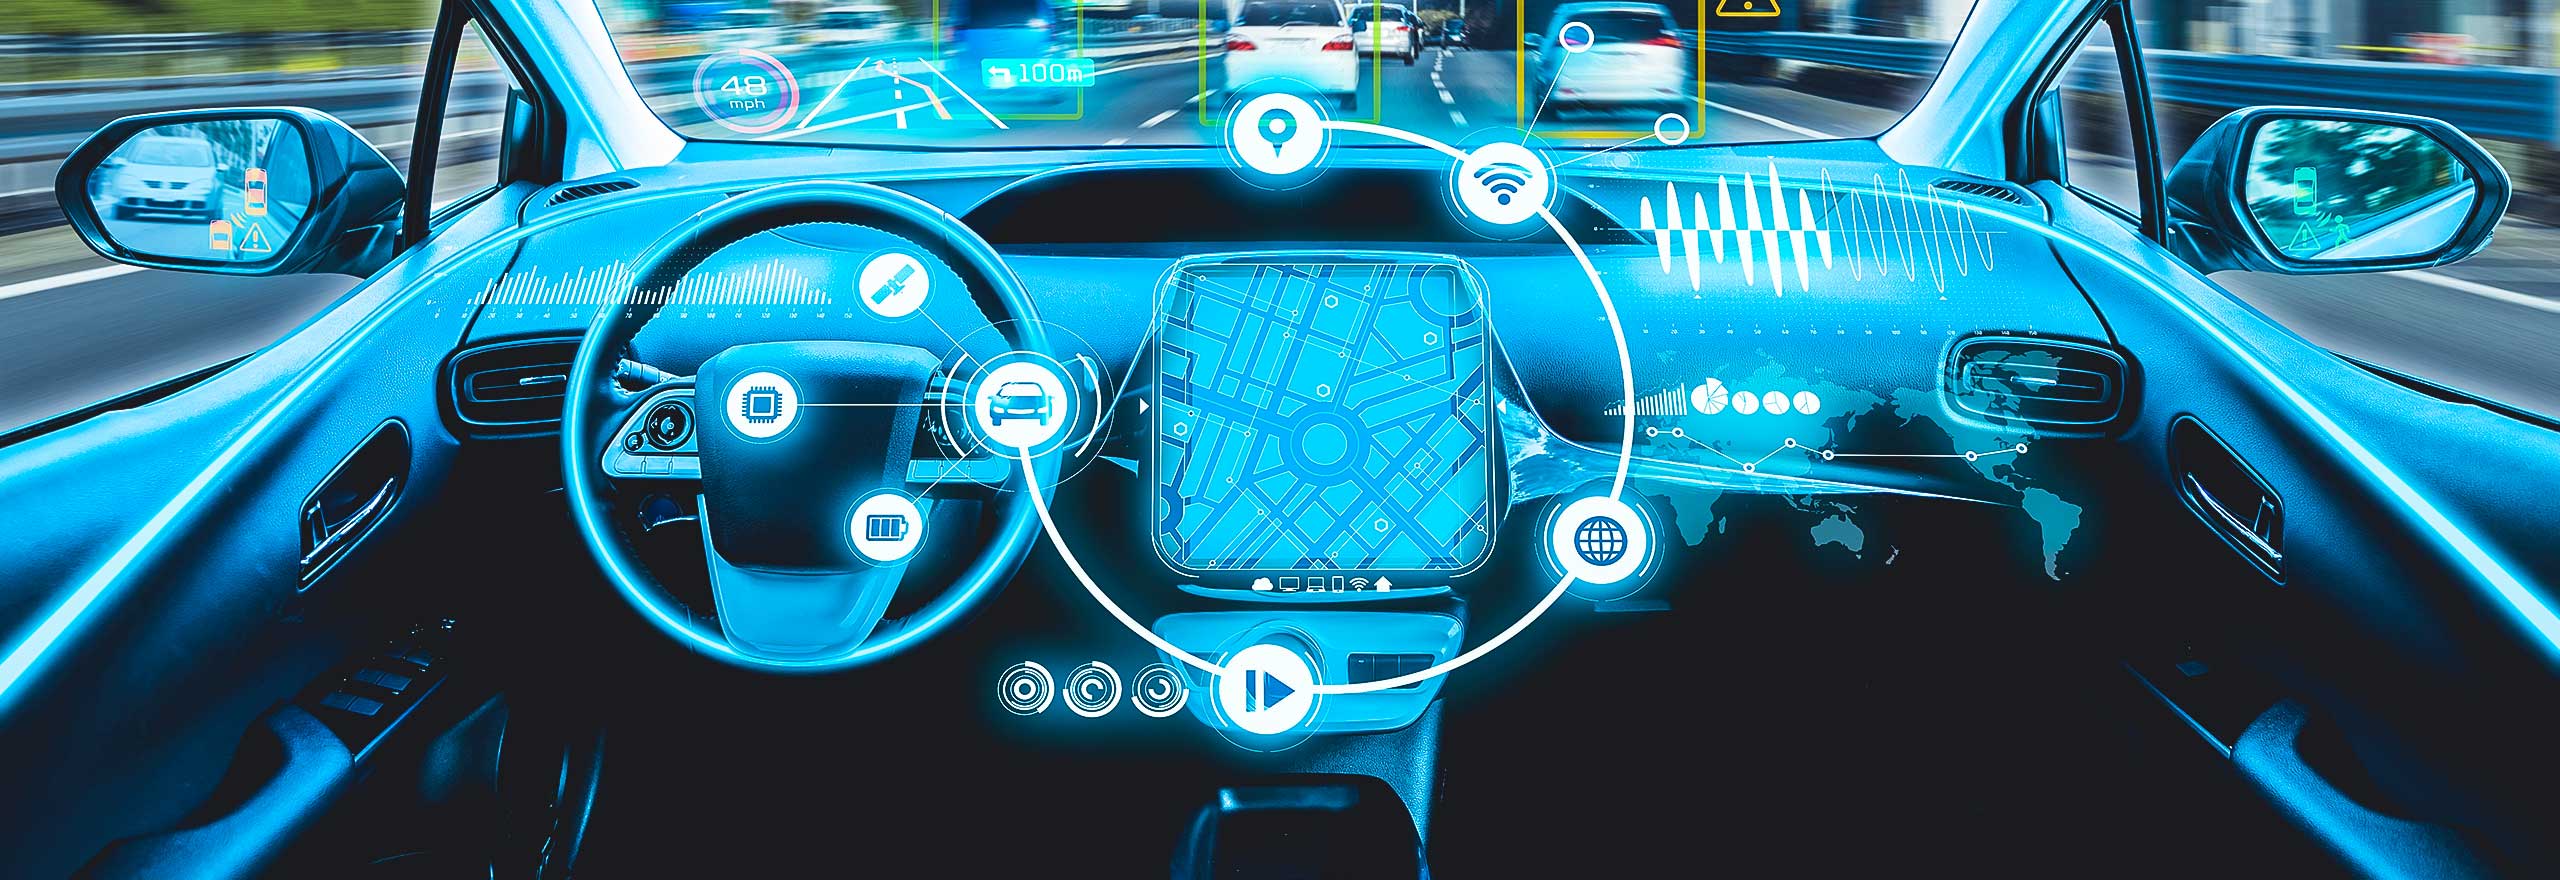 Cockpit automobile autonome futuriste avec des superpositions graphiques montrant les données de trajet. 